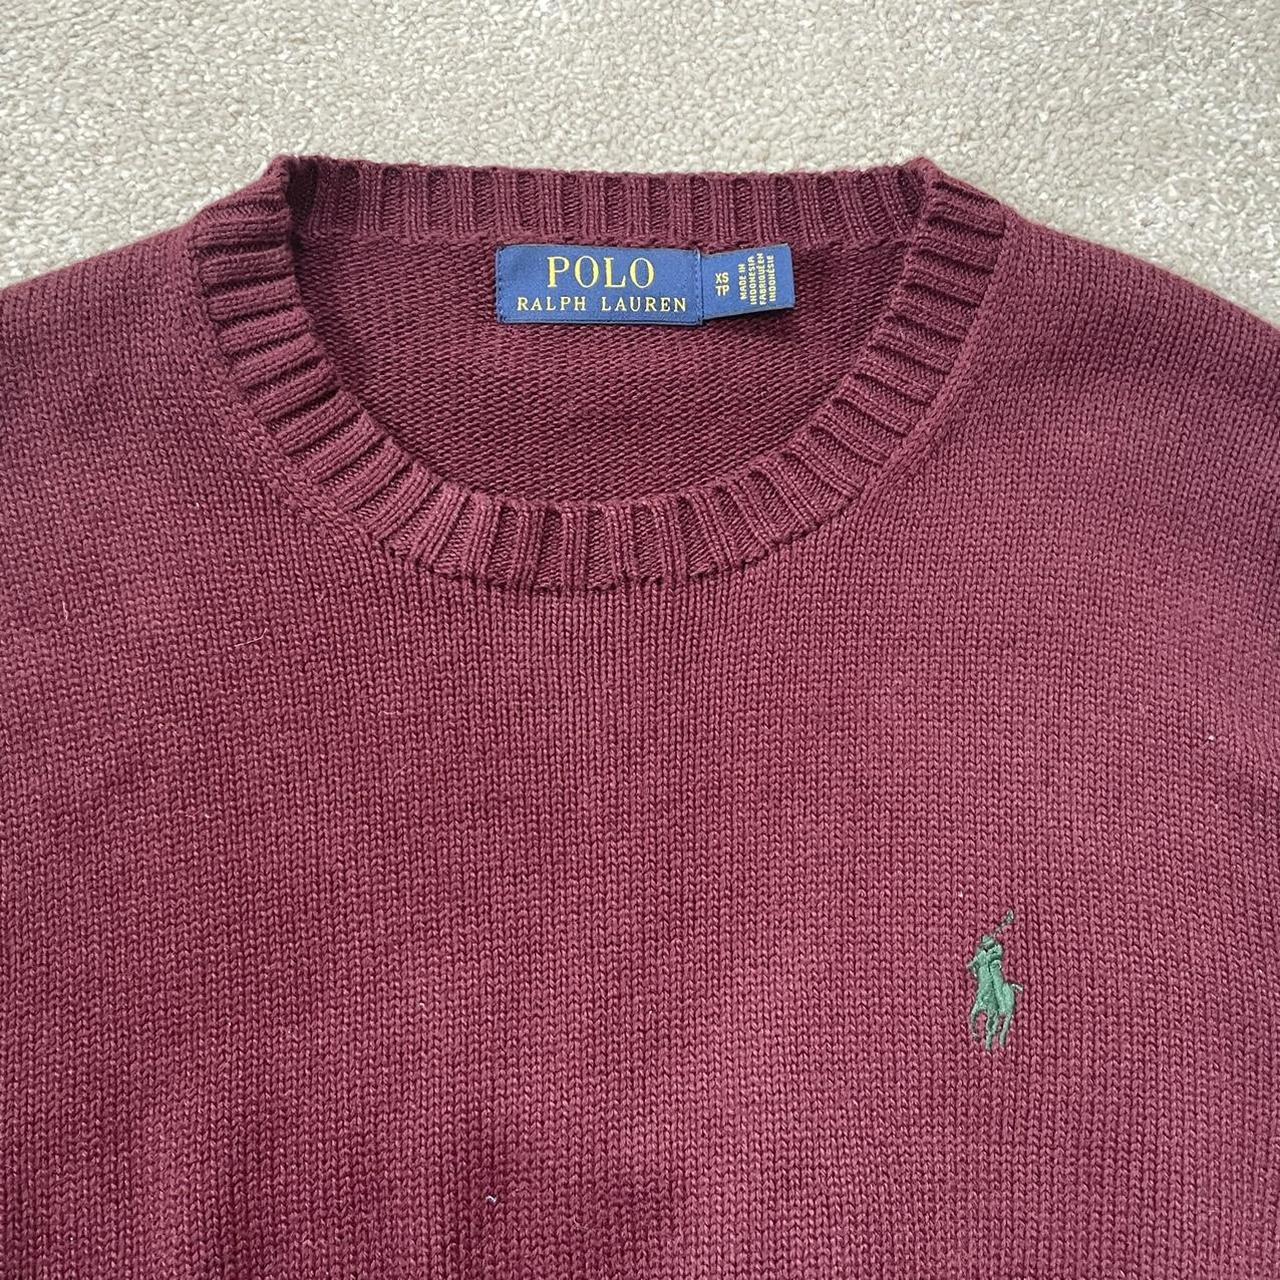 Polo Ralph Lauren Women's Sweatshirt | Depop